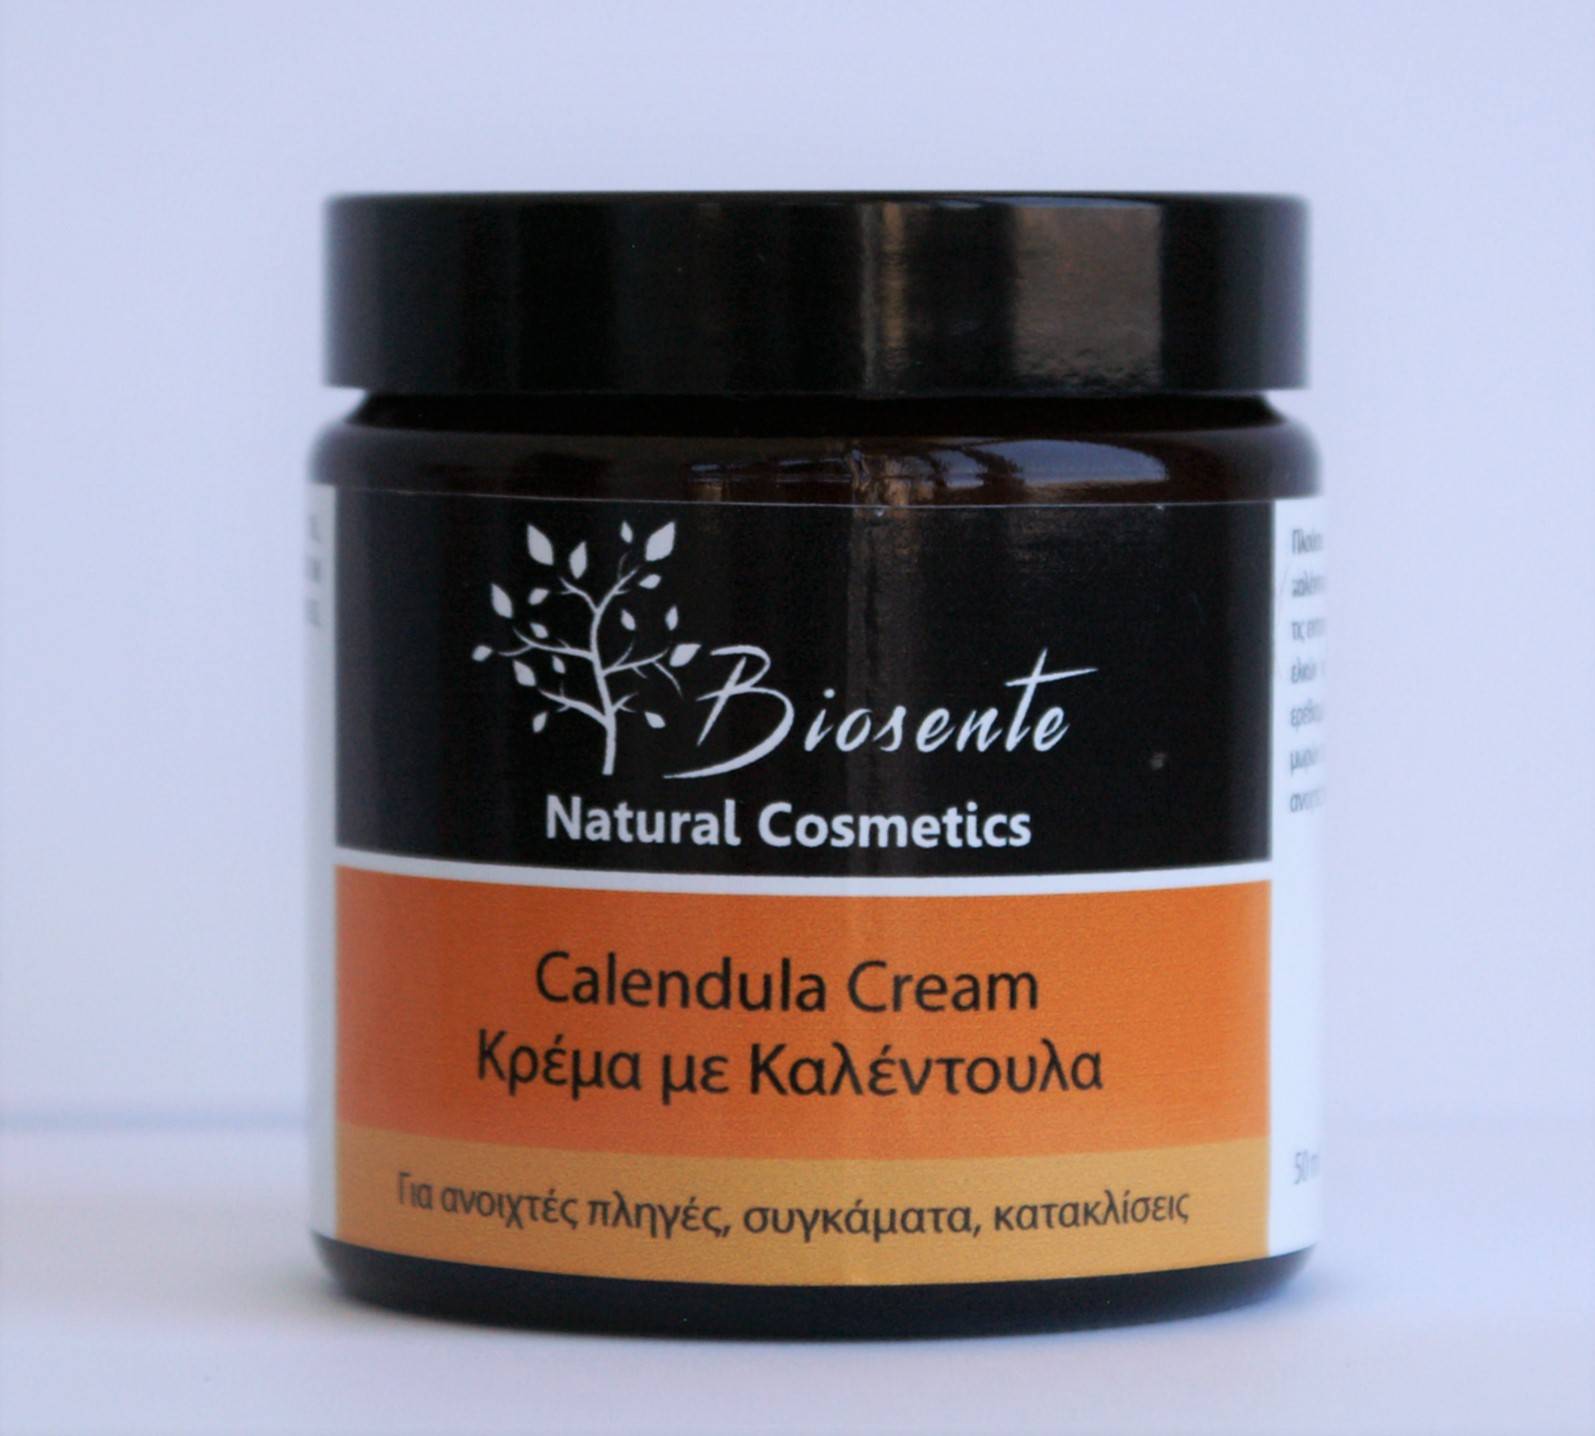 Κρέμα με καλέντουλα για κατακλίσεις ( Biosente Calendula Cream )